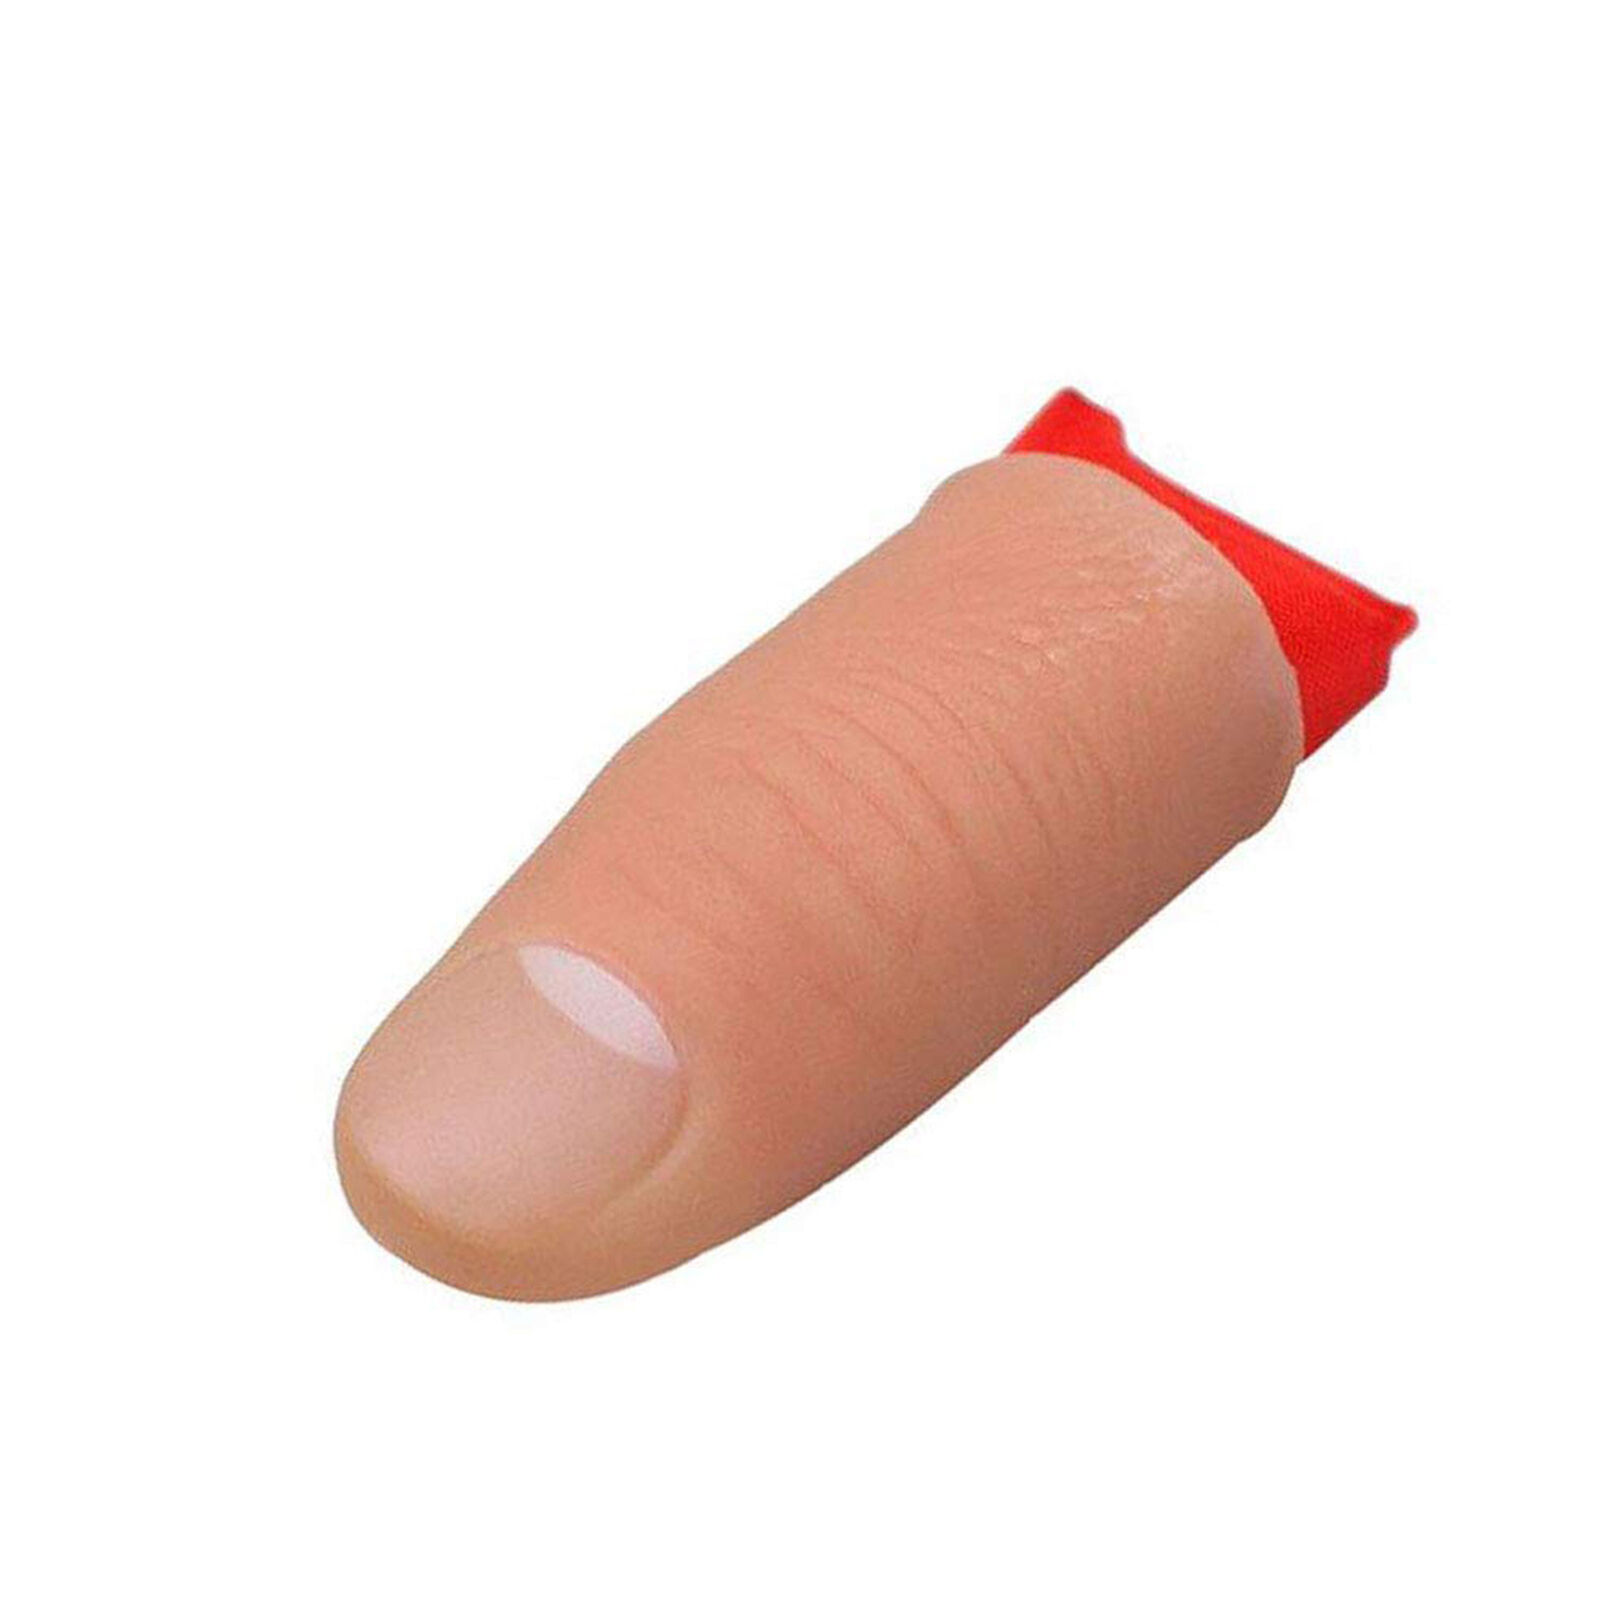 4Pcs Thumb Tip Finger Fake Trick Vinyl Fun Toy Joke Prank Props Vanish Red Silk